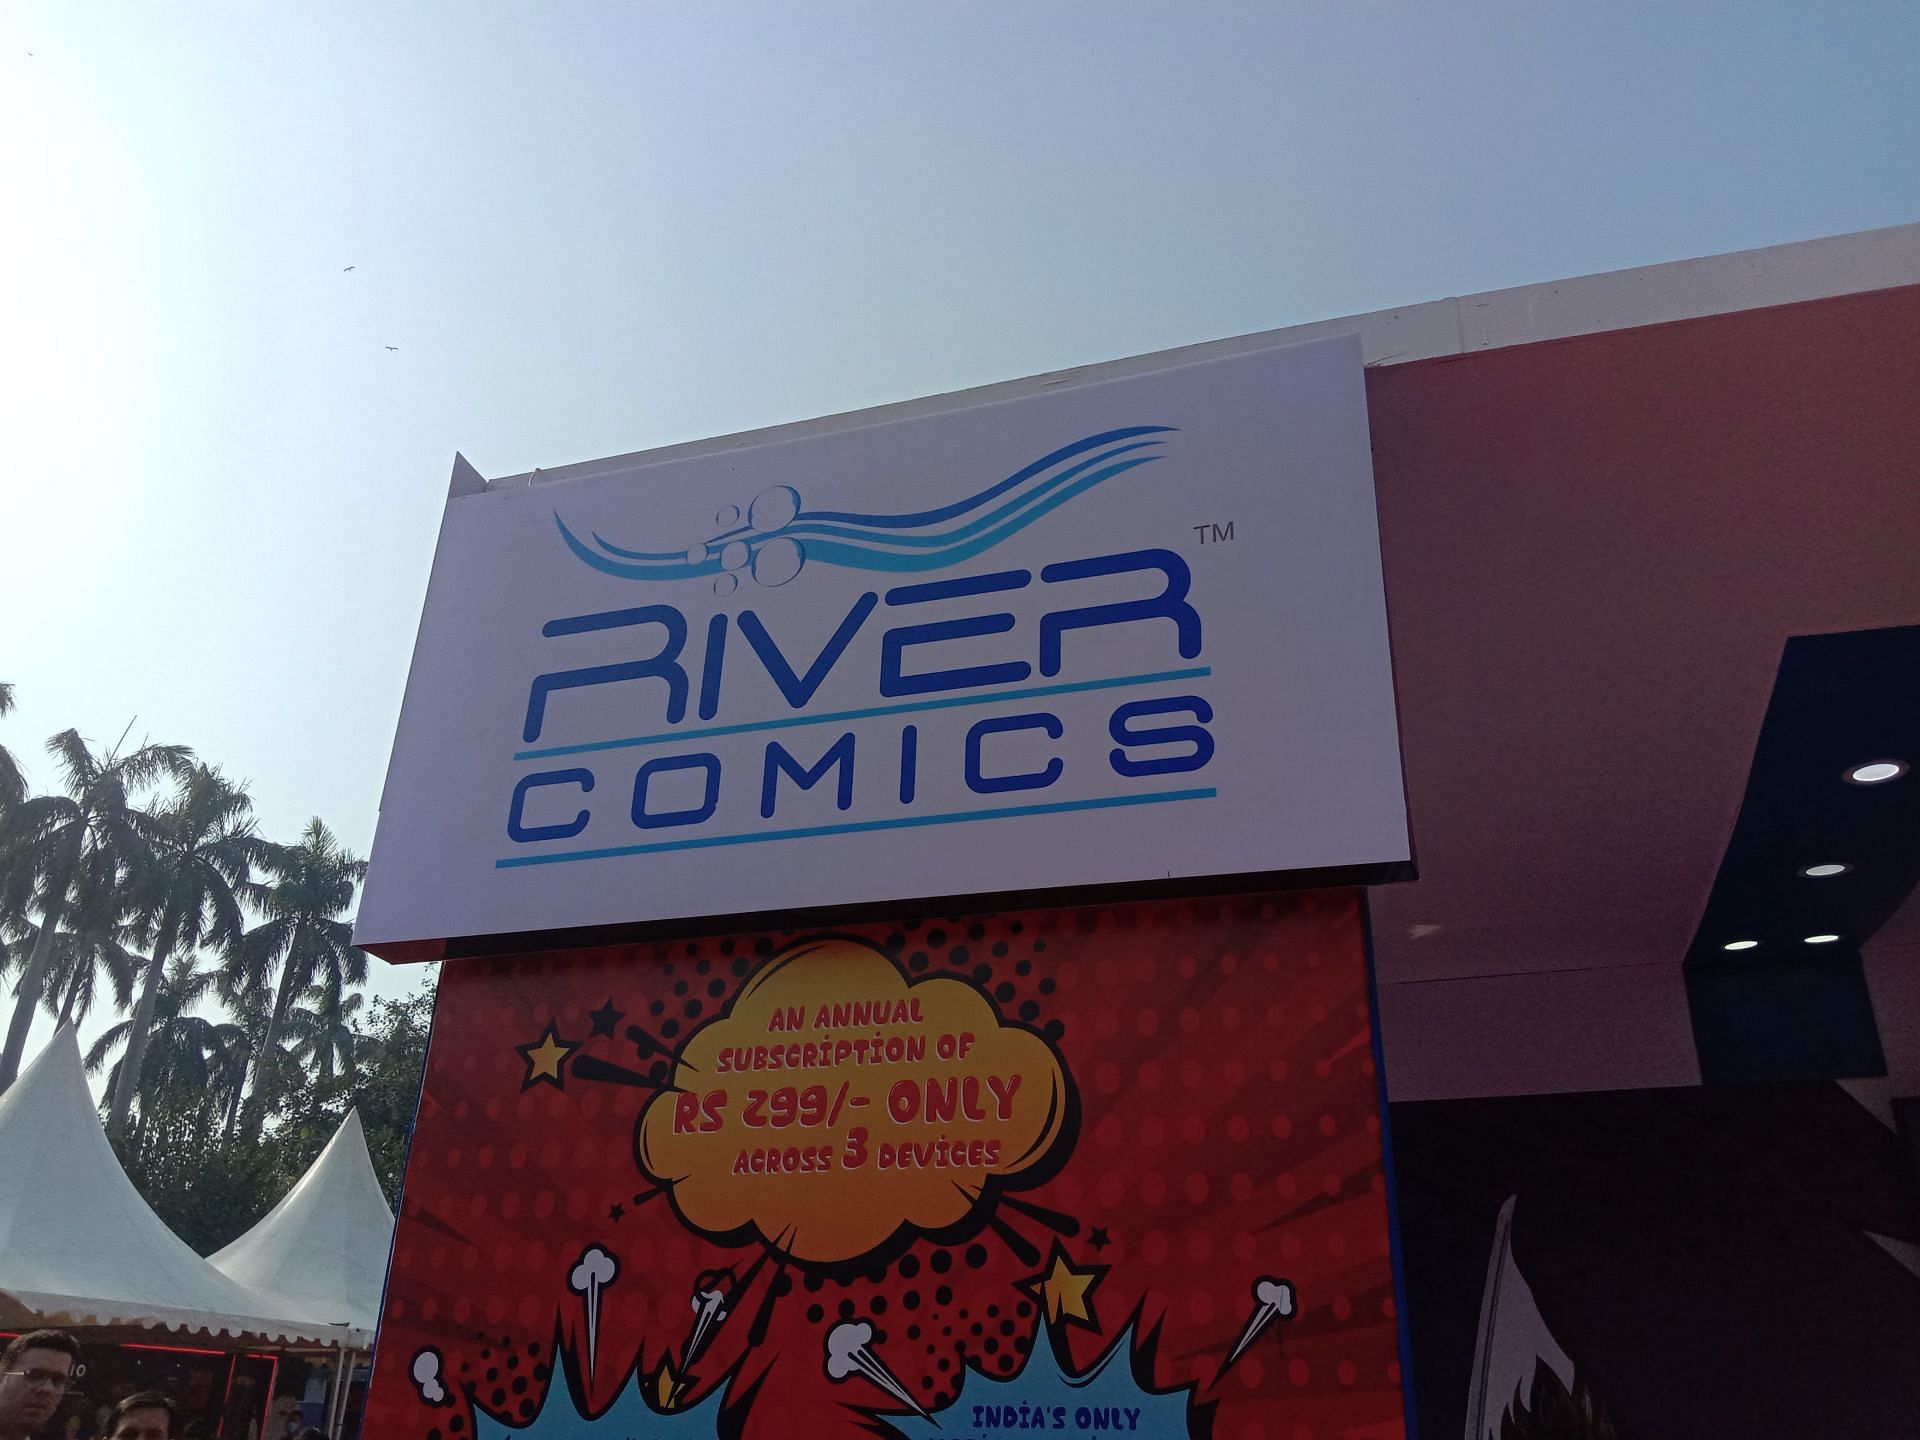 Delhi Comic Con 2022 (Image via Sportskeeda)